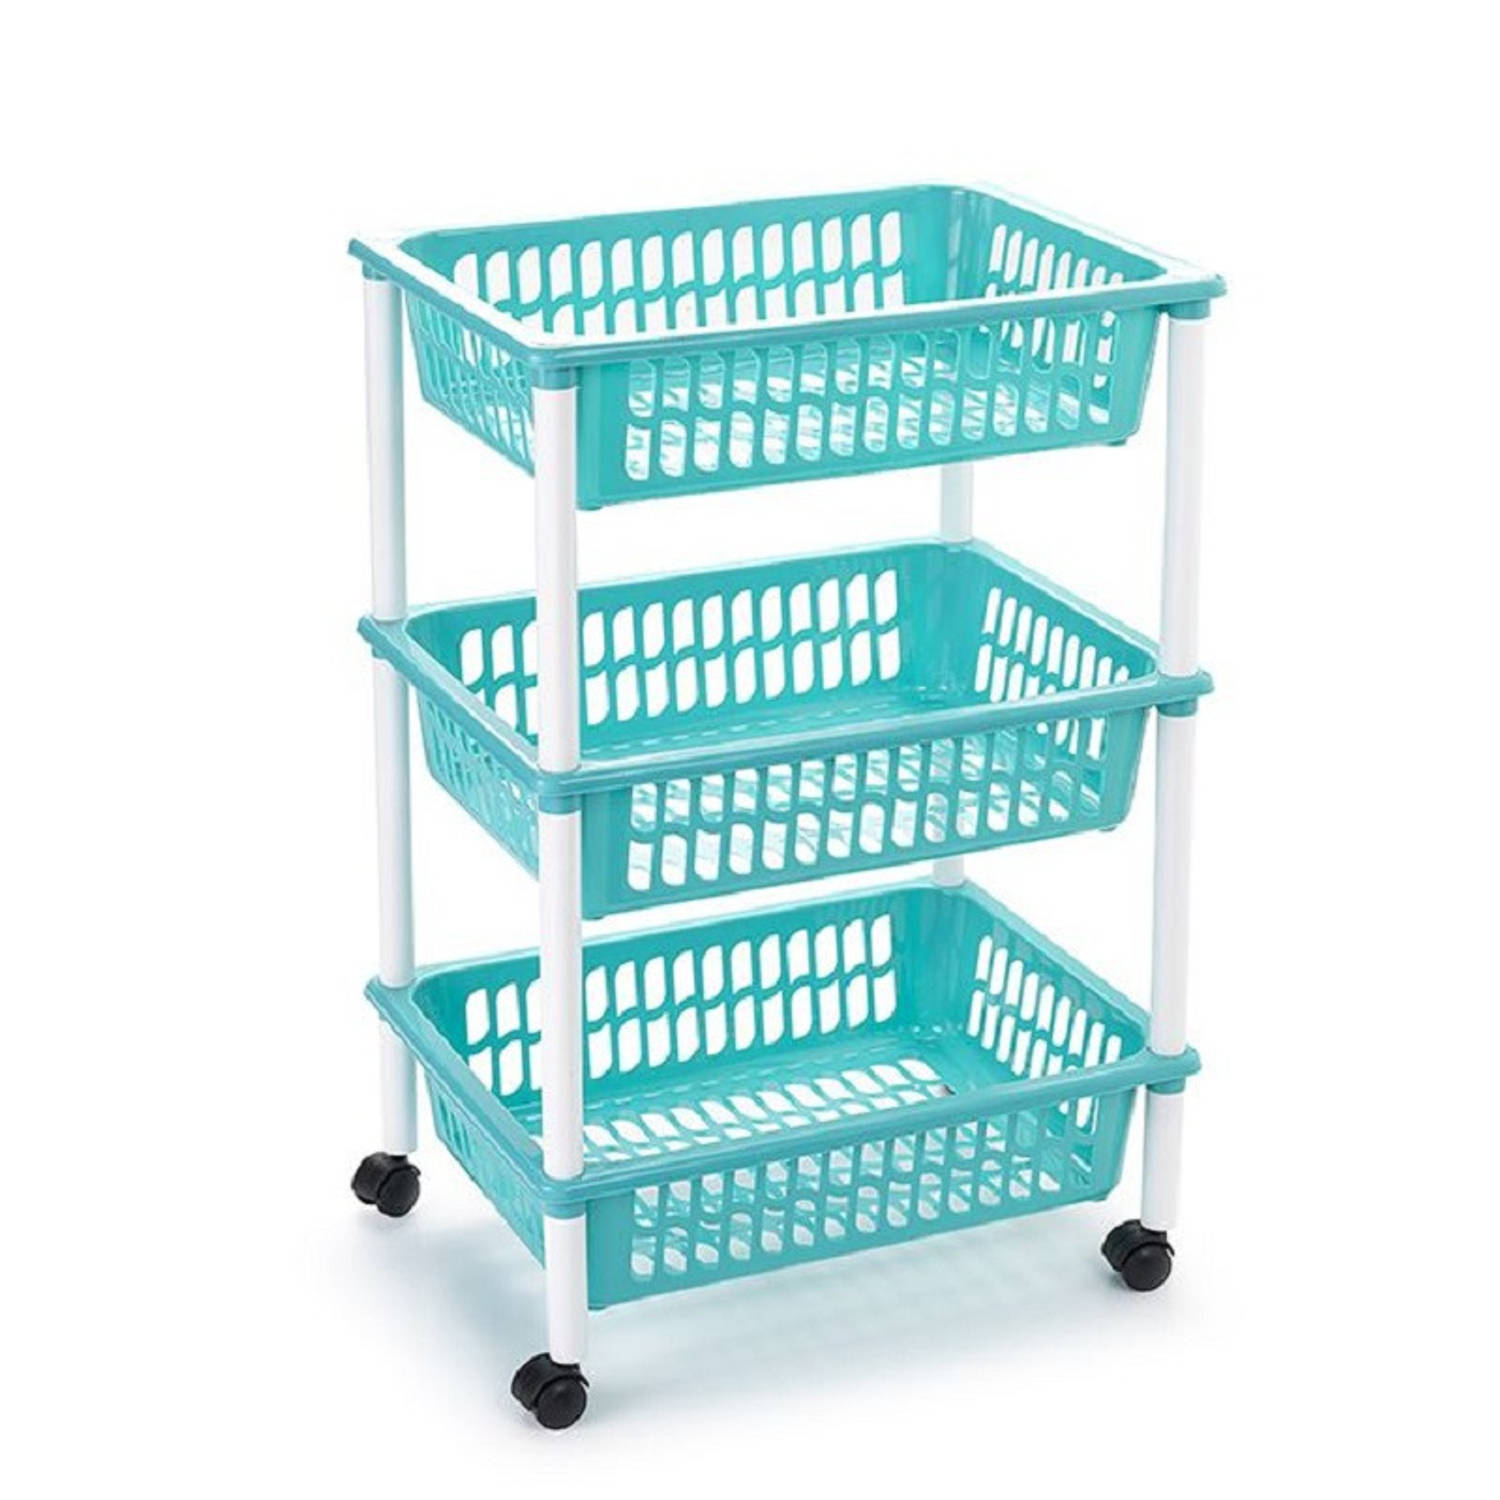 Opberg organiser trolleys/roltafels met 3 manden 62 cm in het turquoise blauw - Opberg trolley